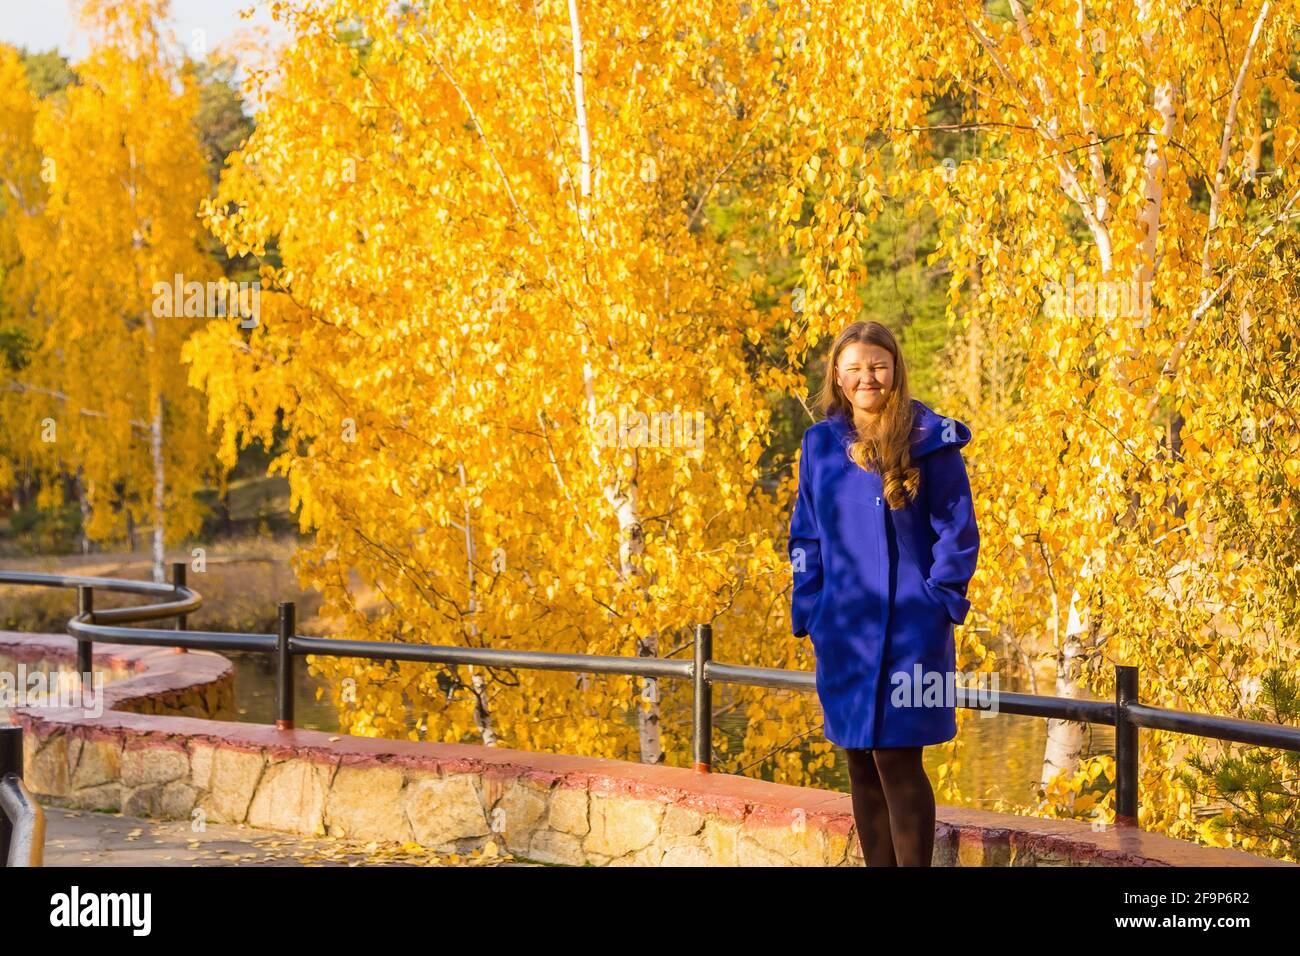 Ein junges Mädchen spaziert im Herbstpark, steht hinter einem Baum. Die Bäume haben gelbe Blätter. Stockfoto